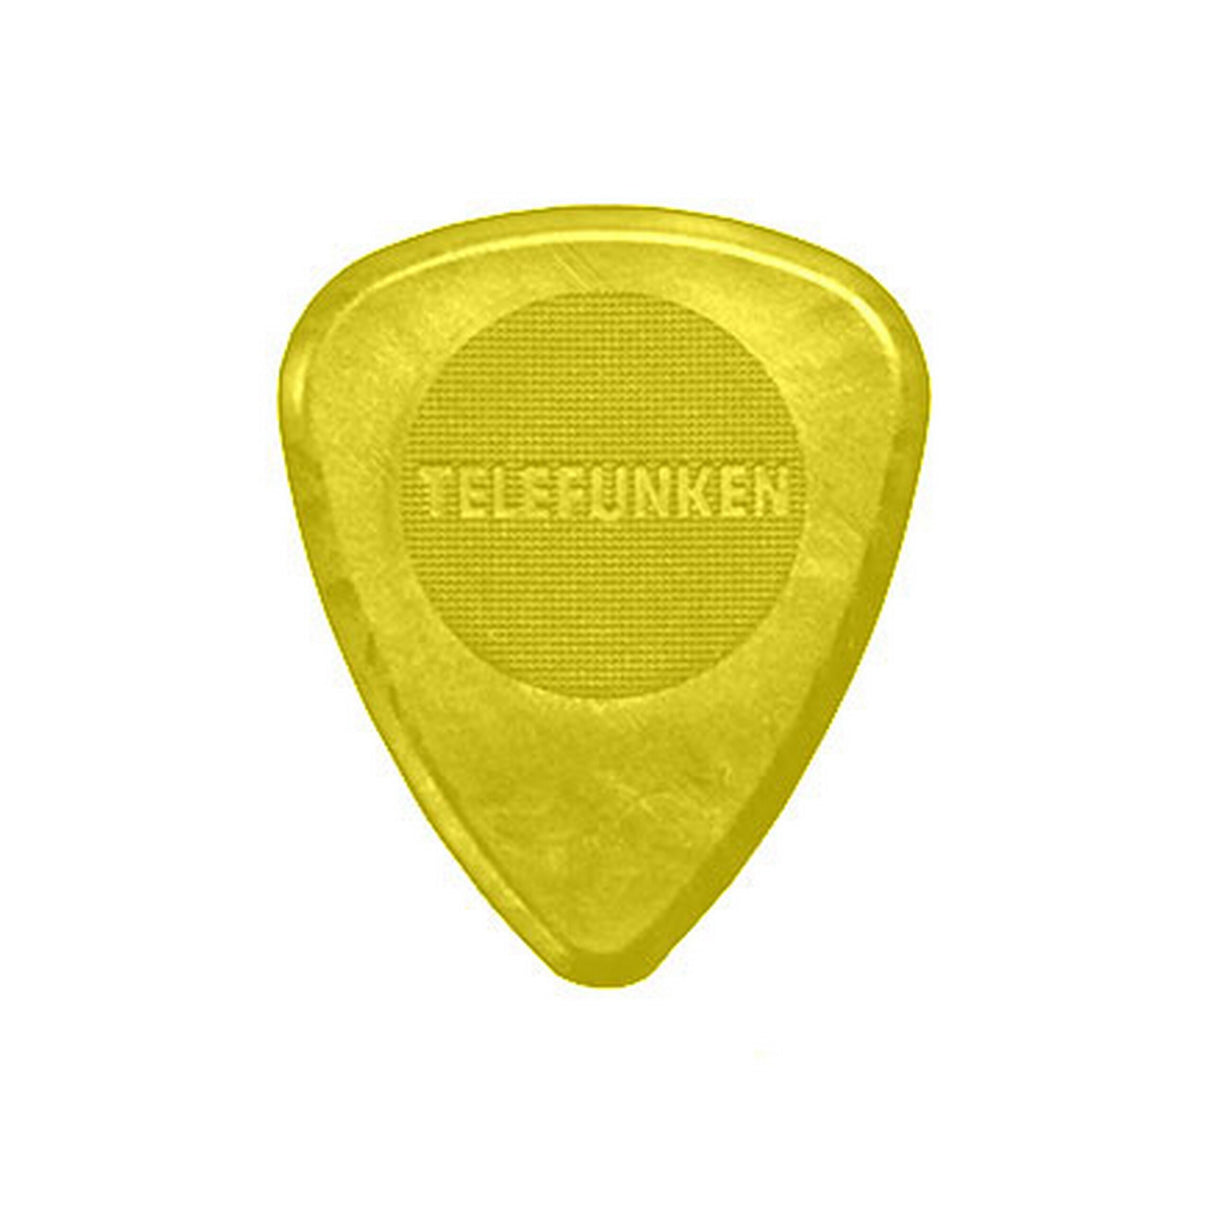 Telefunken 1mm Diamond 6 Pack Thin Guitar Picks, Yellow